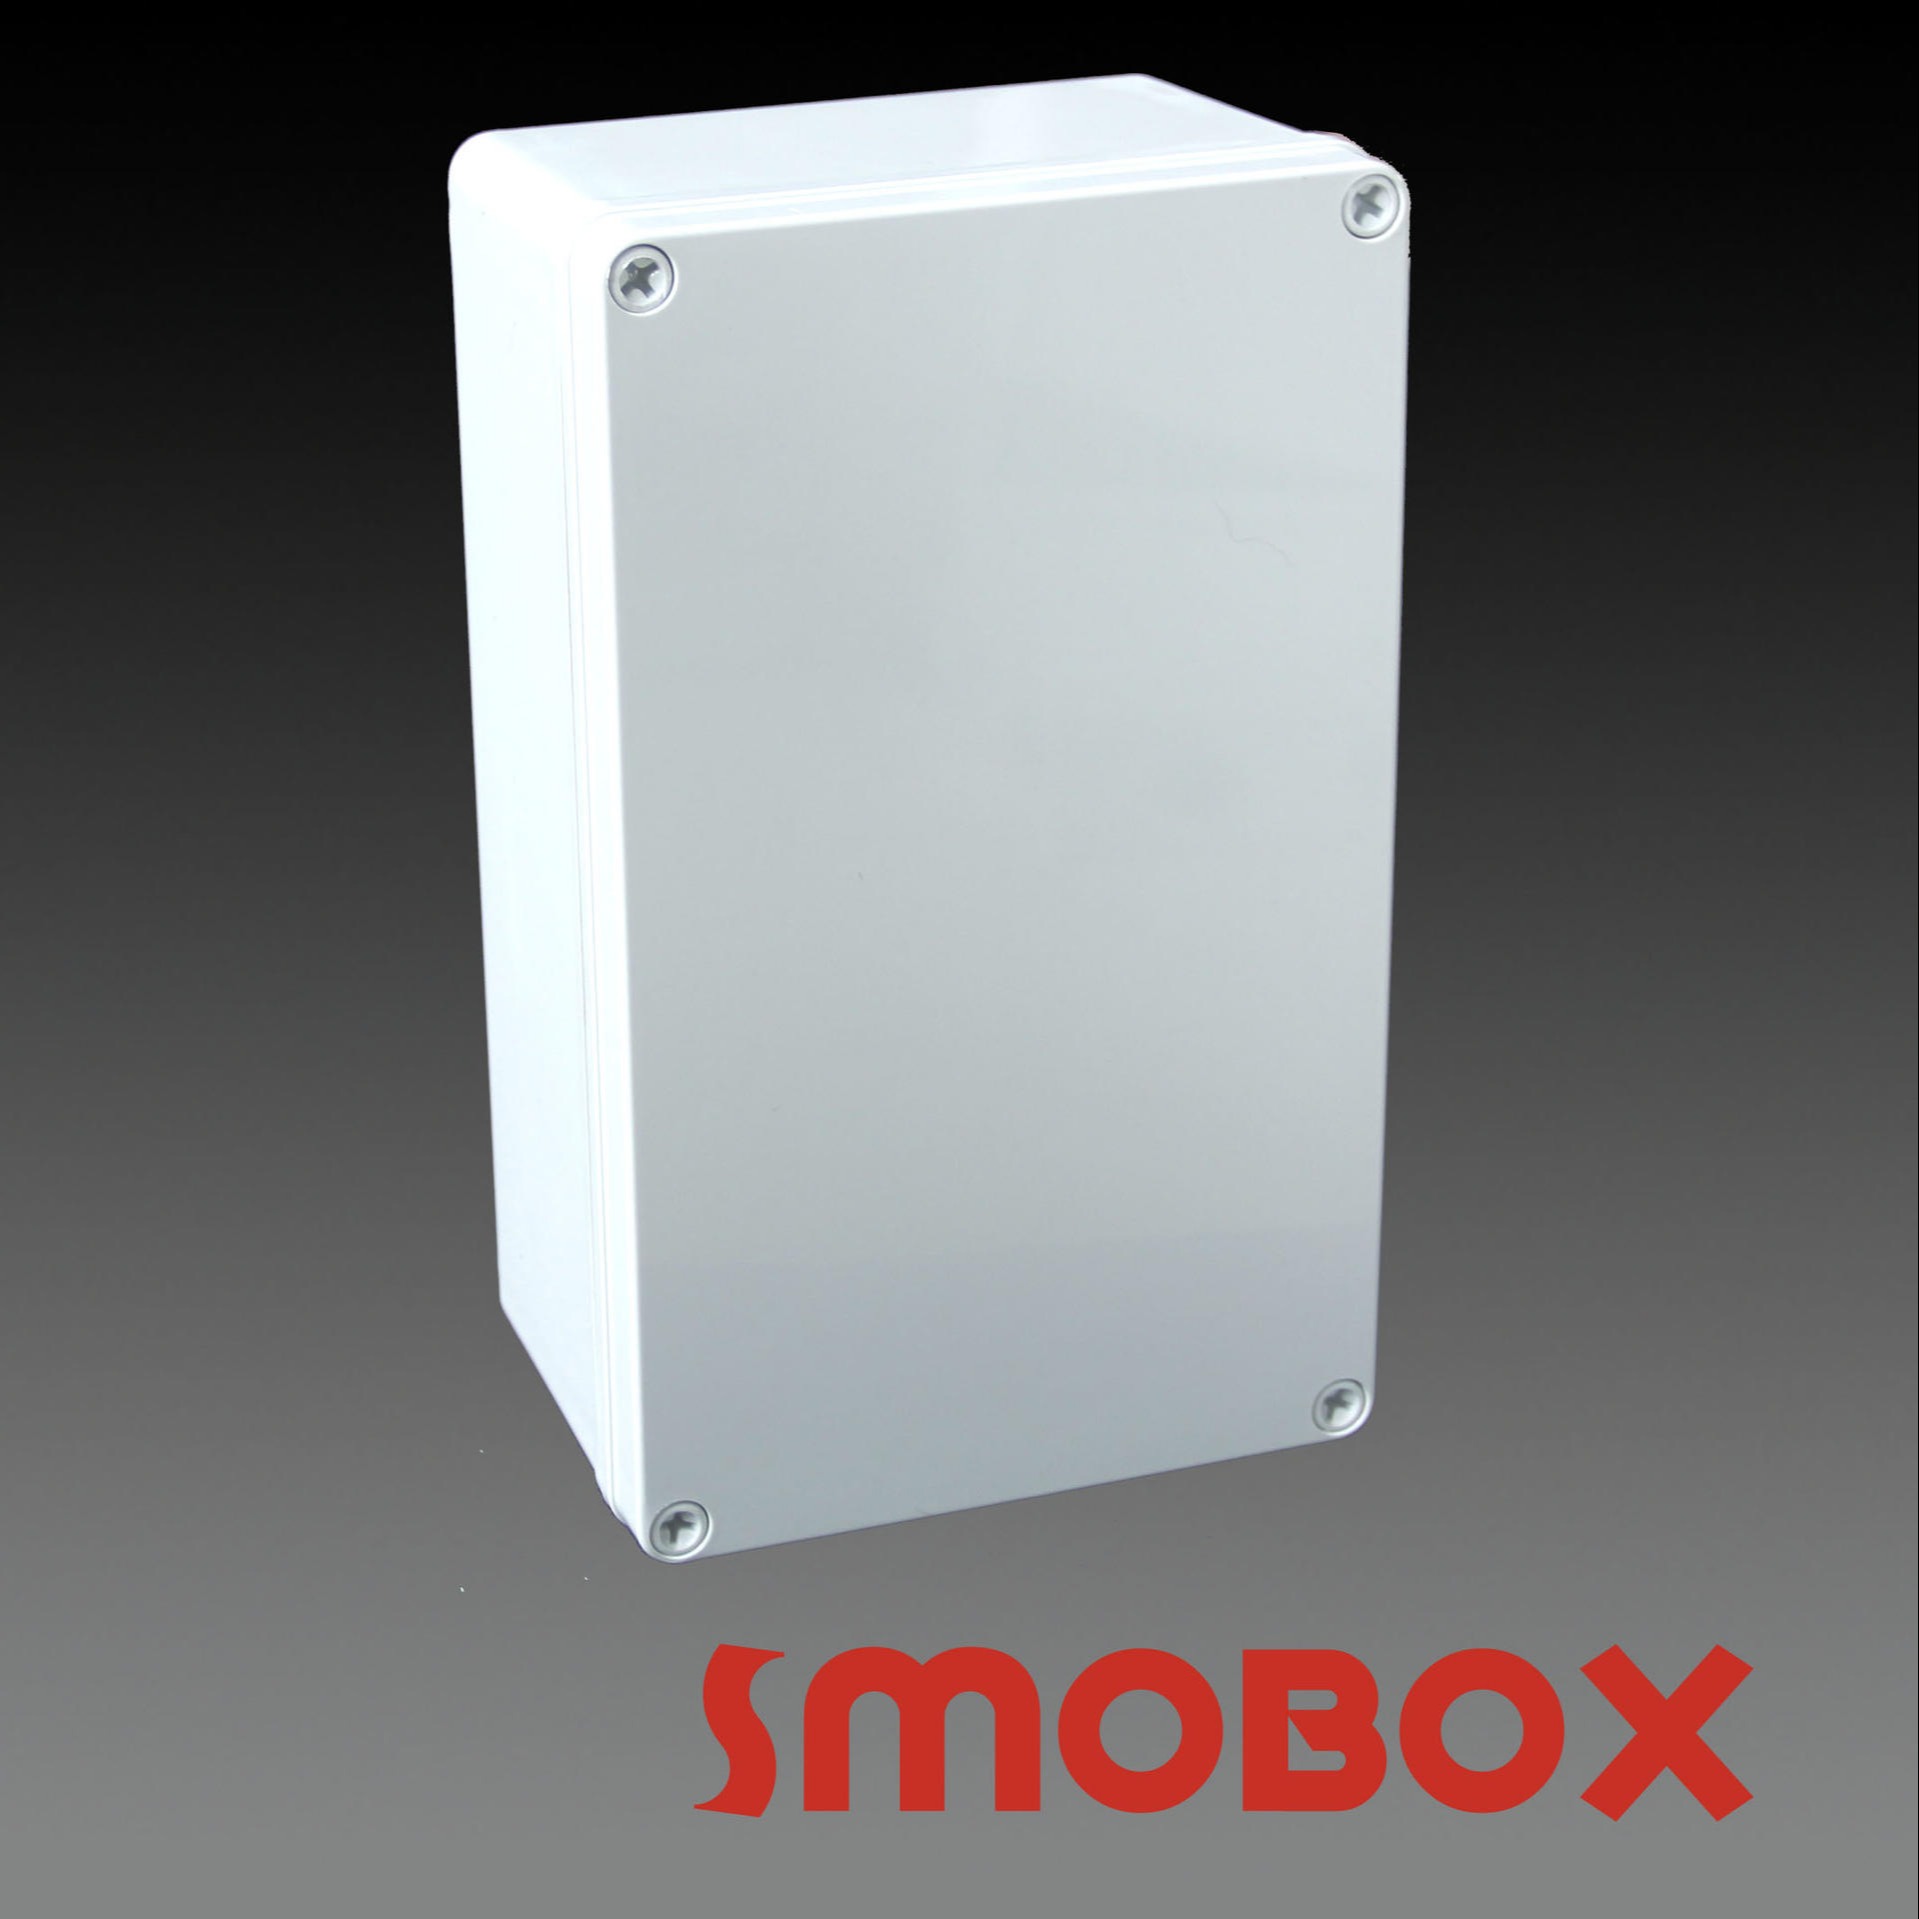 SMOBOX塑料接线箱LD-172510 螺钉款式塑料接线盒  塑料配电箱 外壳可定制各种开关箱 终端箱壳体 优选材料图片